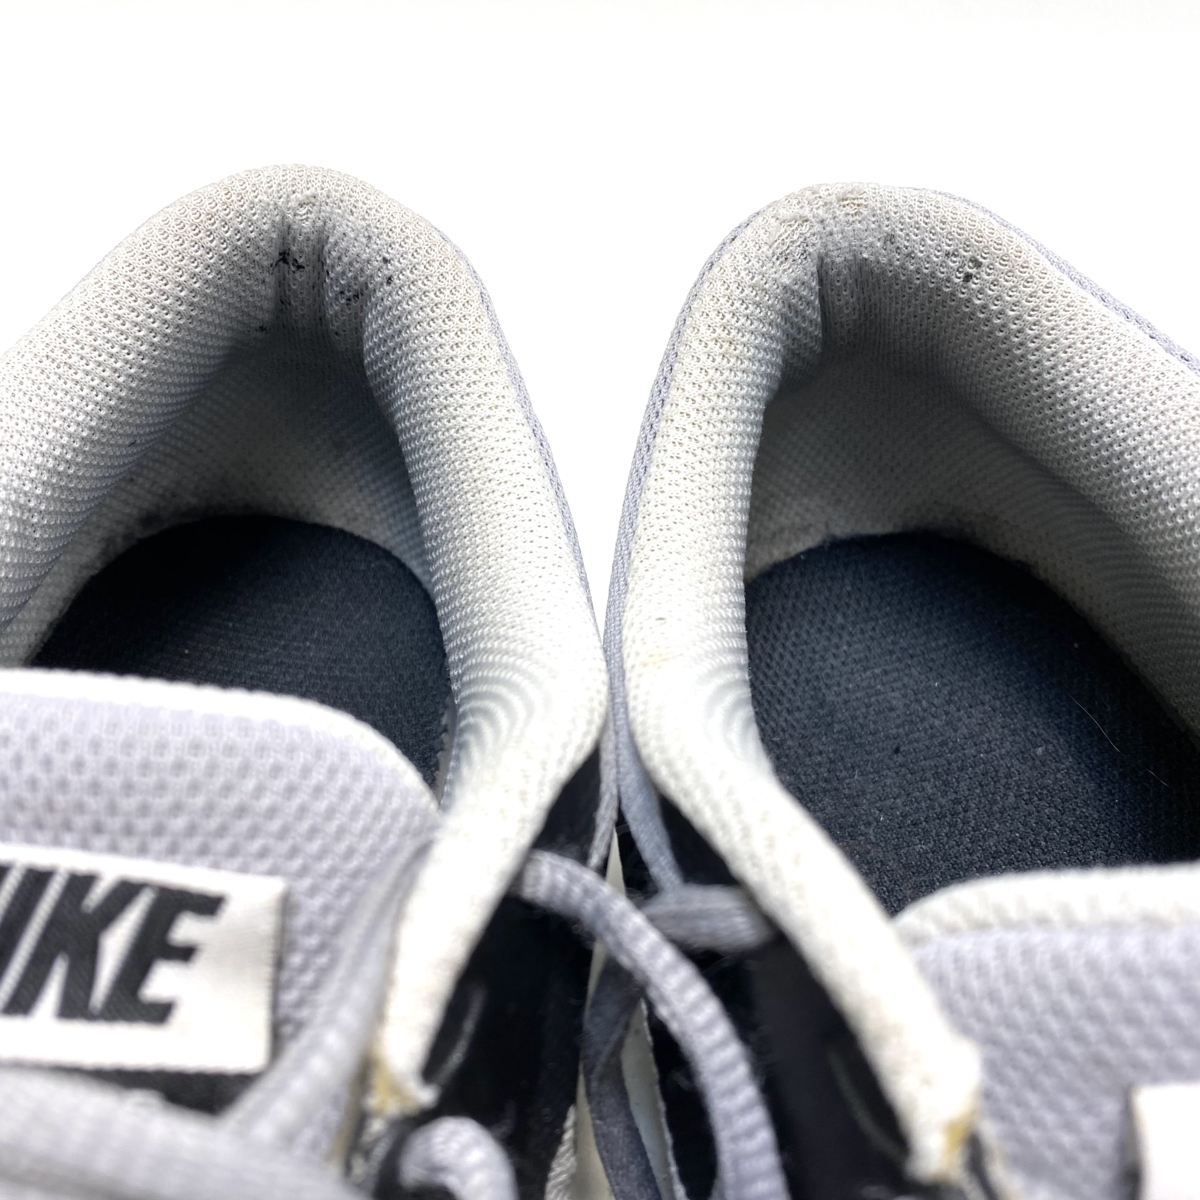 29.5cm соответствует NIKE AIR ONE RUNNING TRAINING SHOES Nike воздушный 1TR бег спортивные туфли серый легкий / U2814